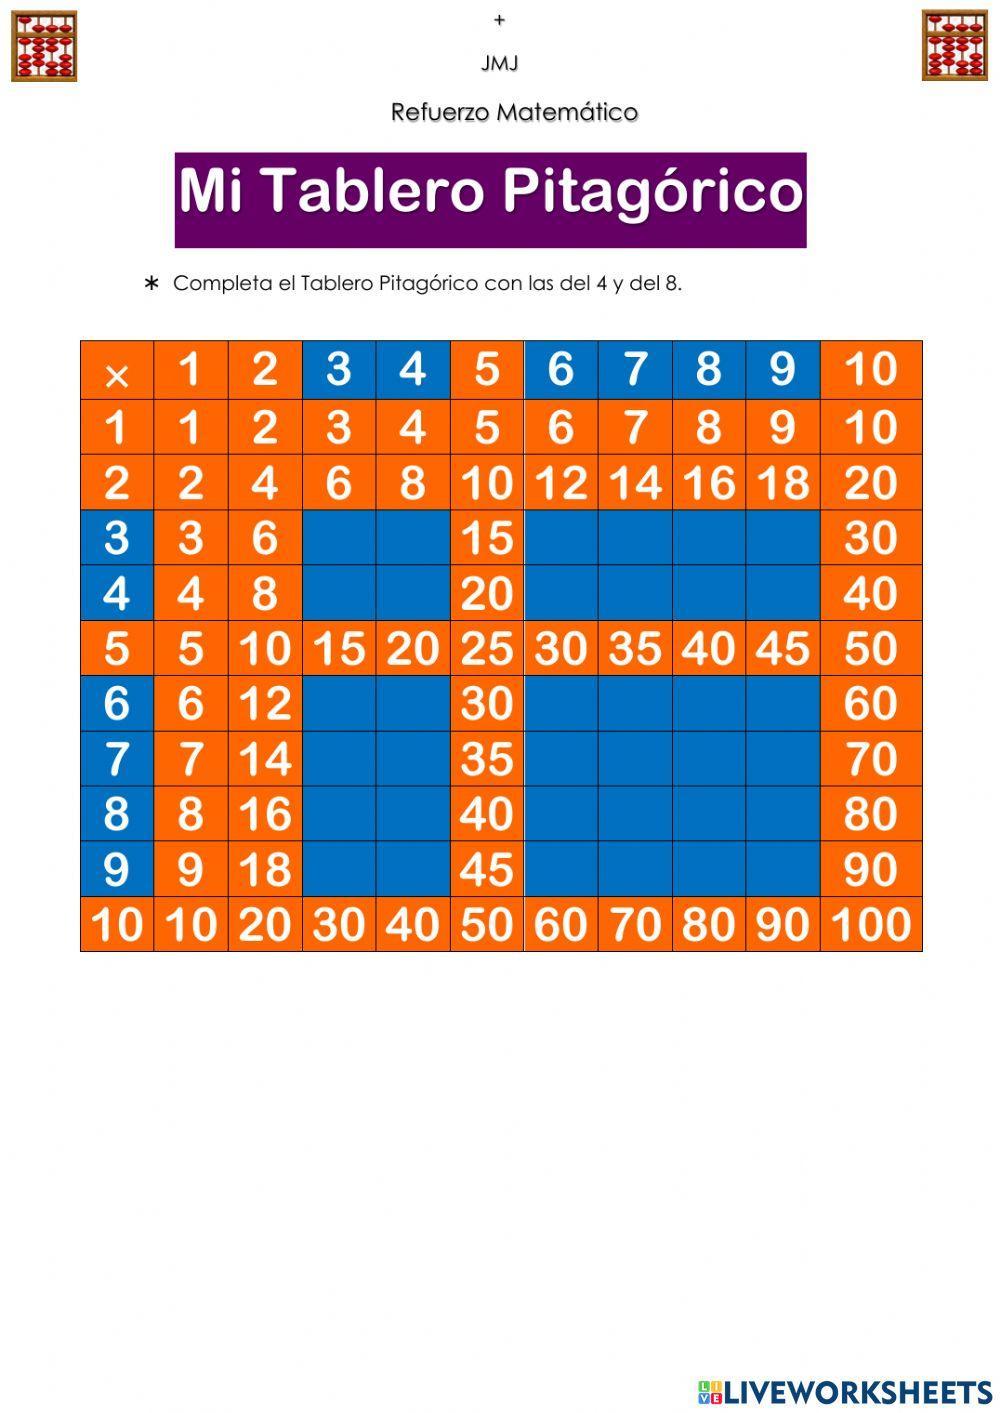 Tablero Pitagórico tablas de 4 y 8